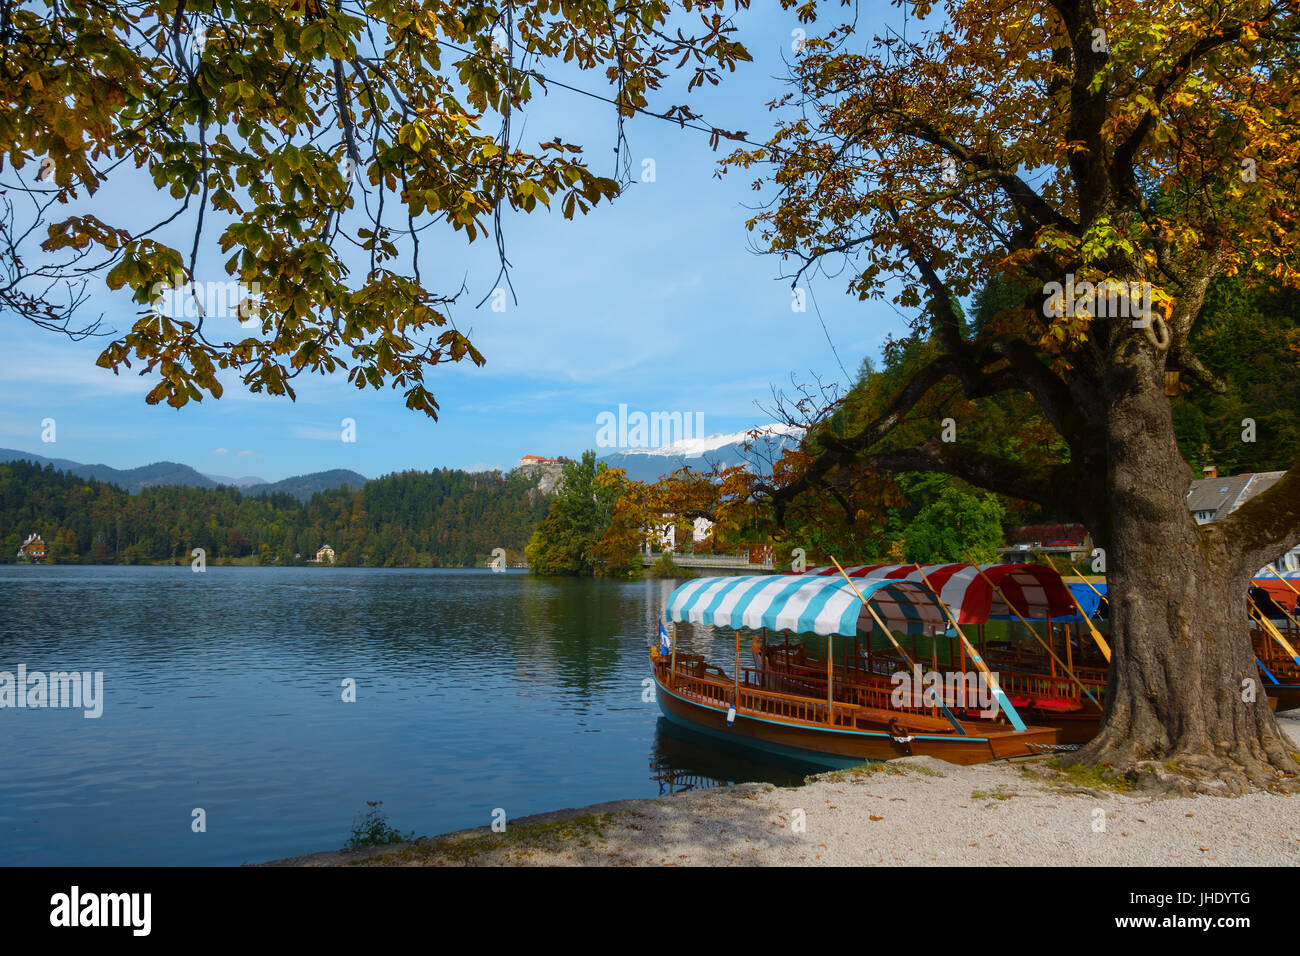 Imbarcazioni a remi con tetti colorati, il cosiddetto pletna barche, nell'acqua del lago di Bled sotto un albero di castagno in autunno colori in autunno, Slovenia. Foto Stock